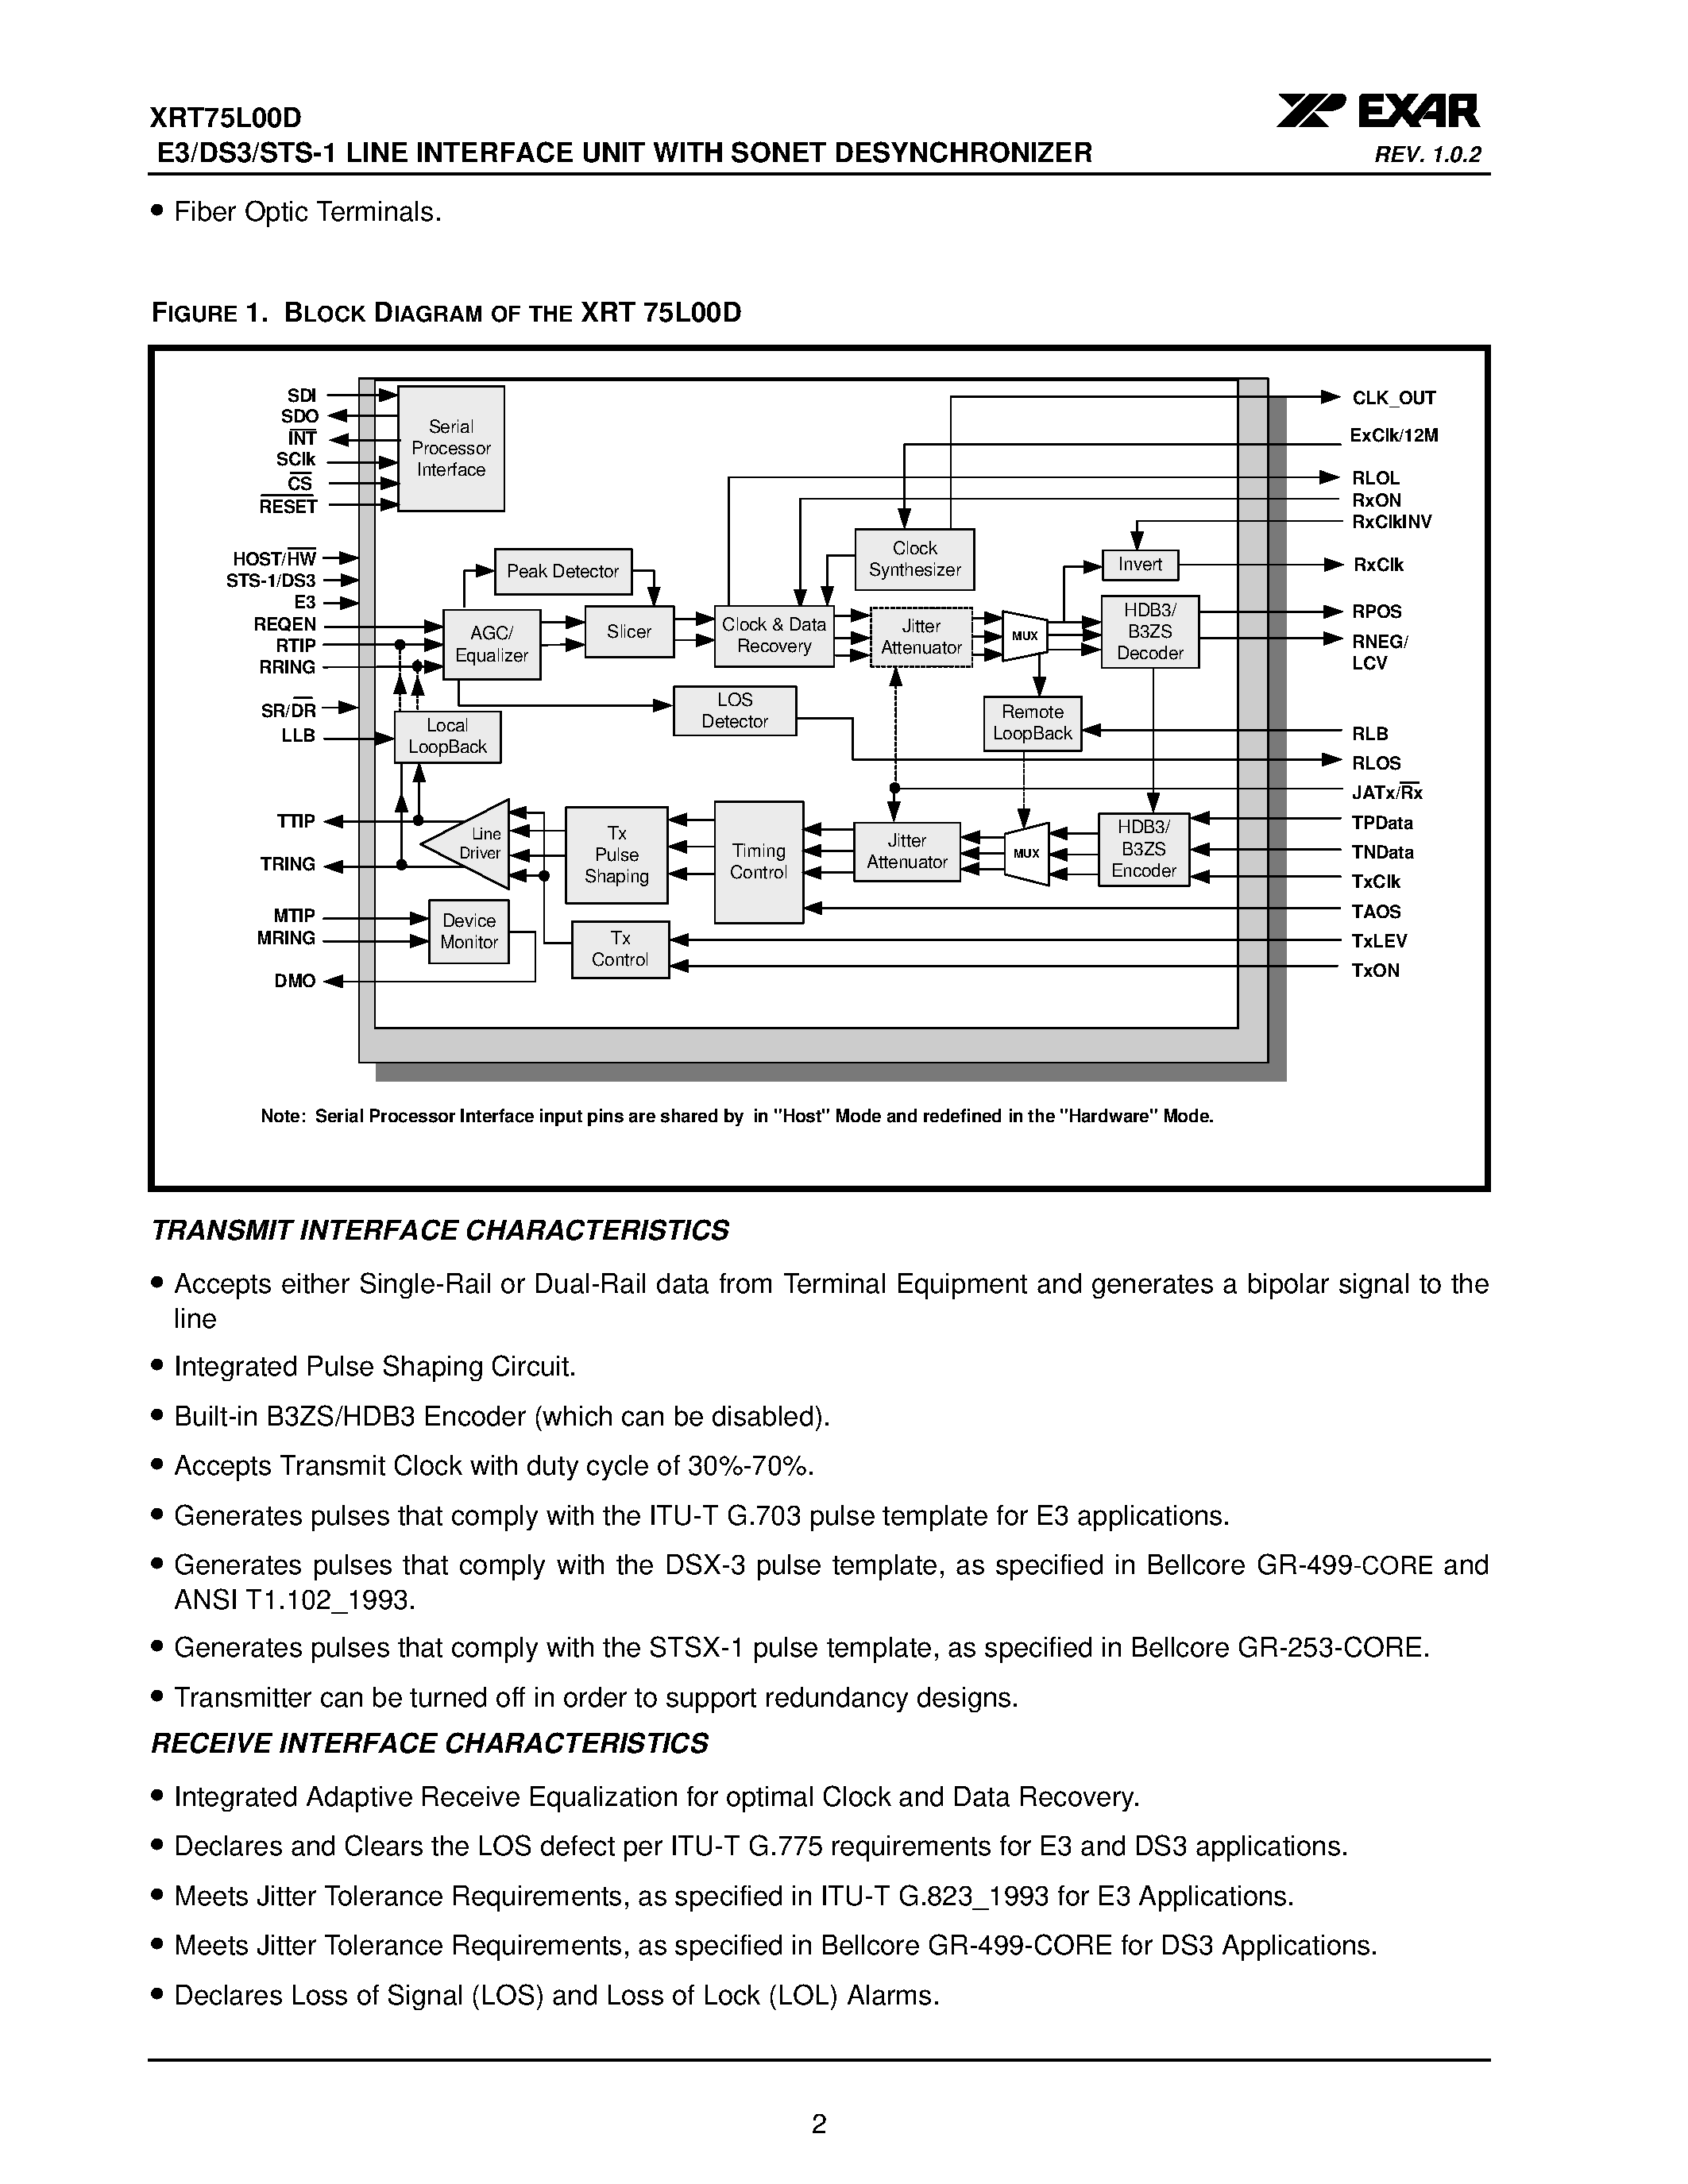 Datasheet XRT75L00D - E3/DS3/STS-1 LINE INTERFACE UNIT page 2